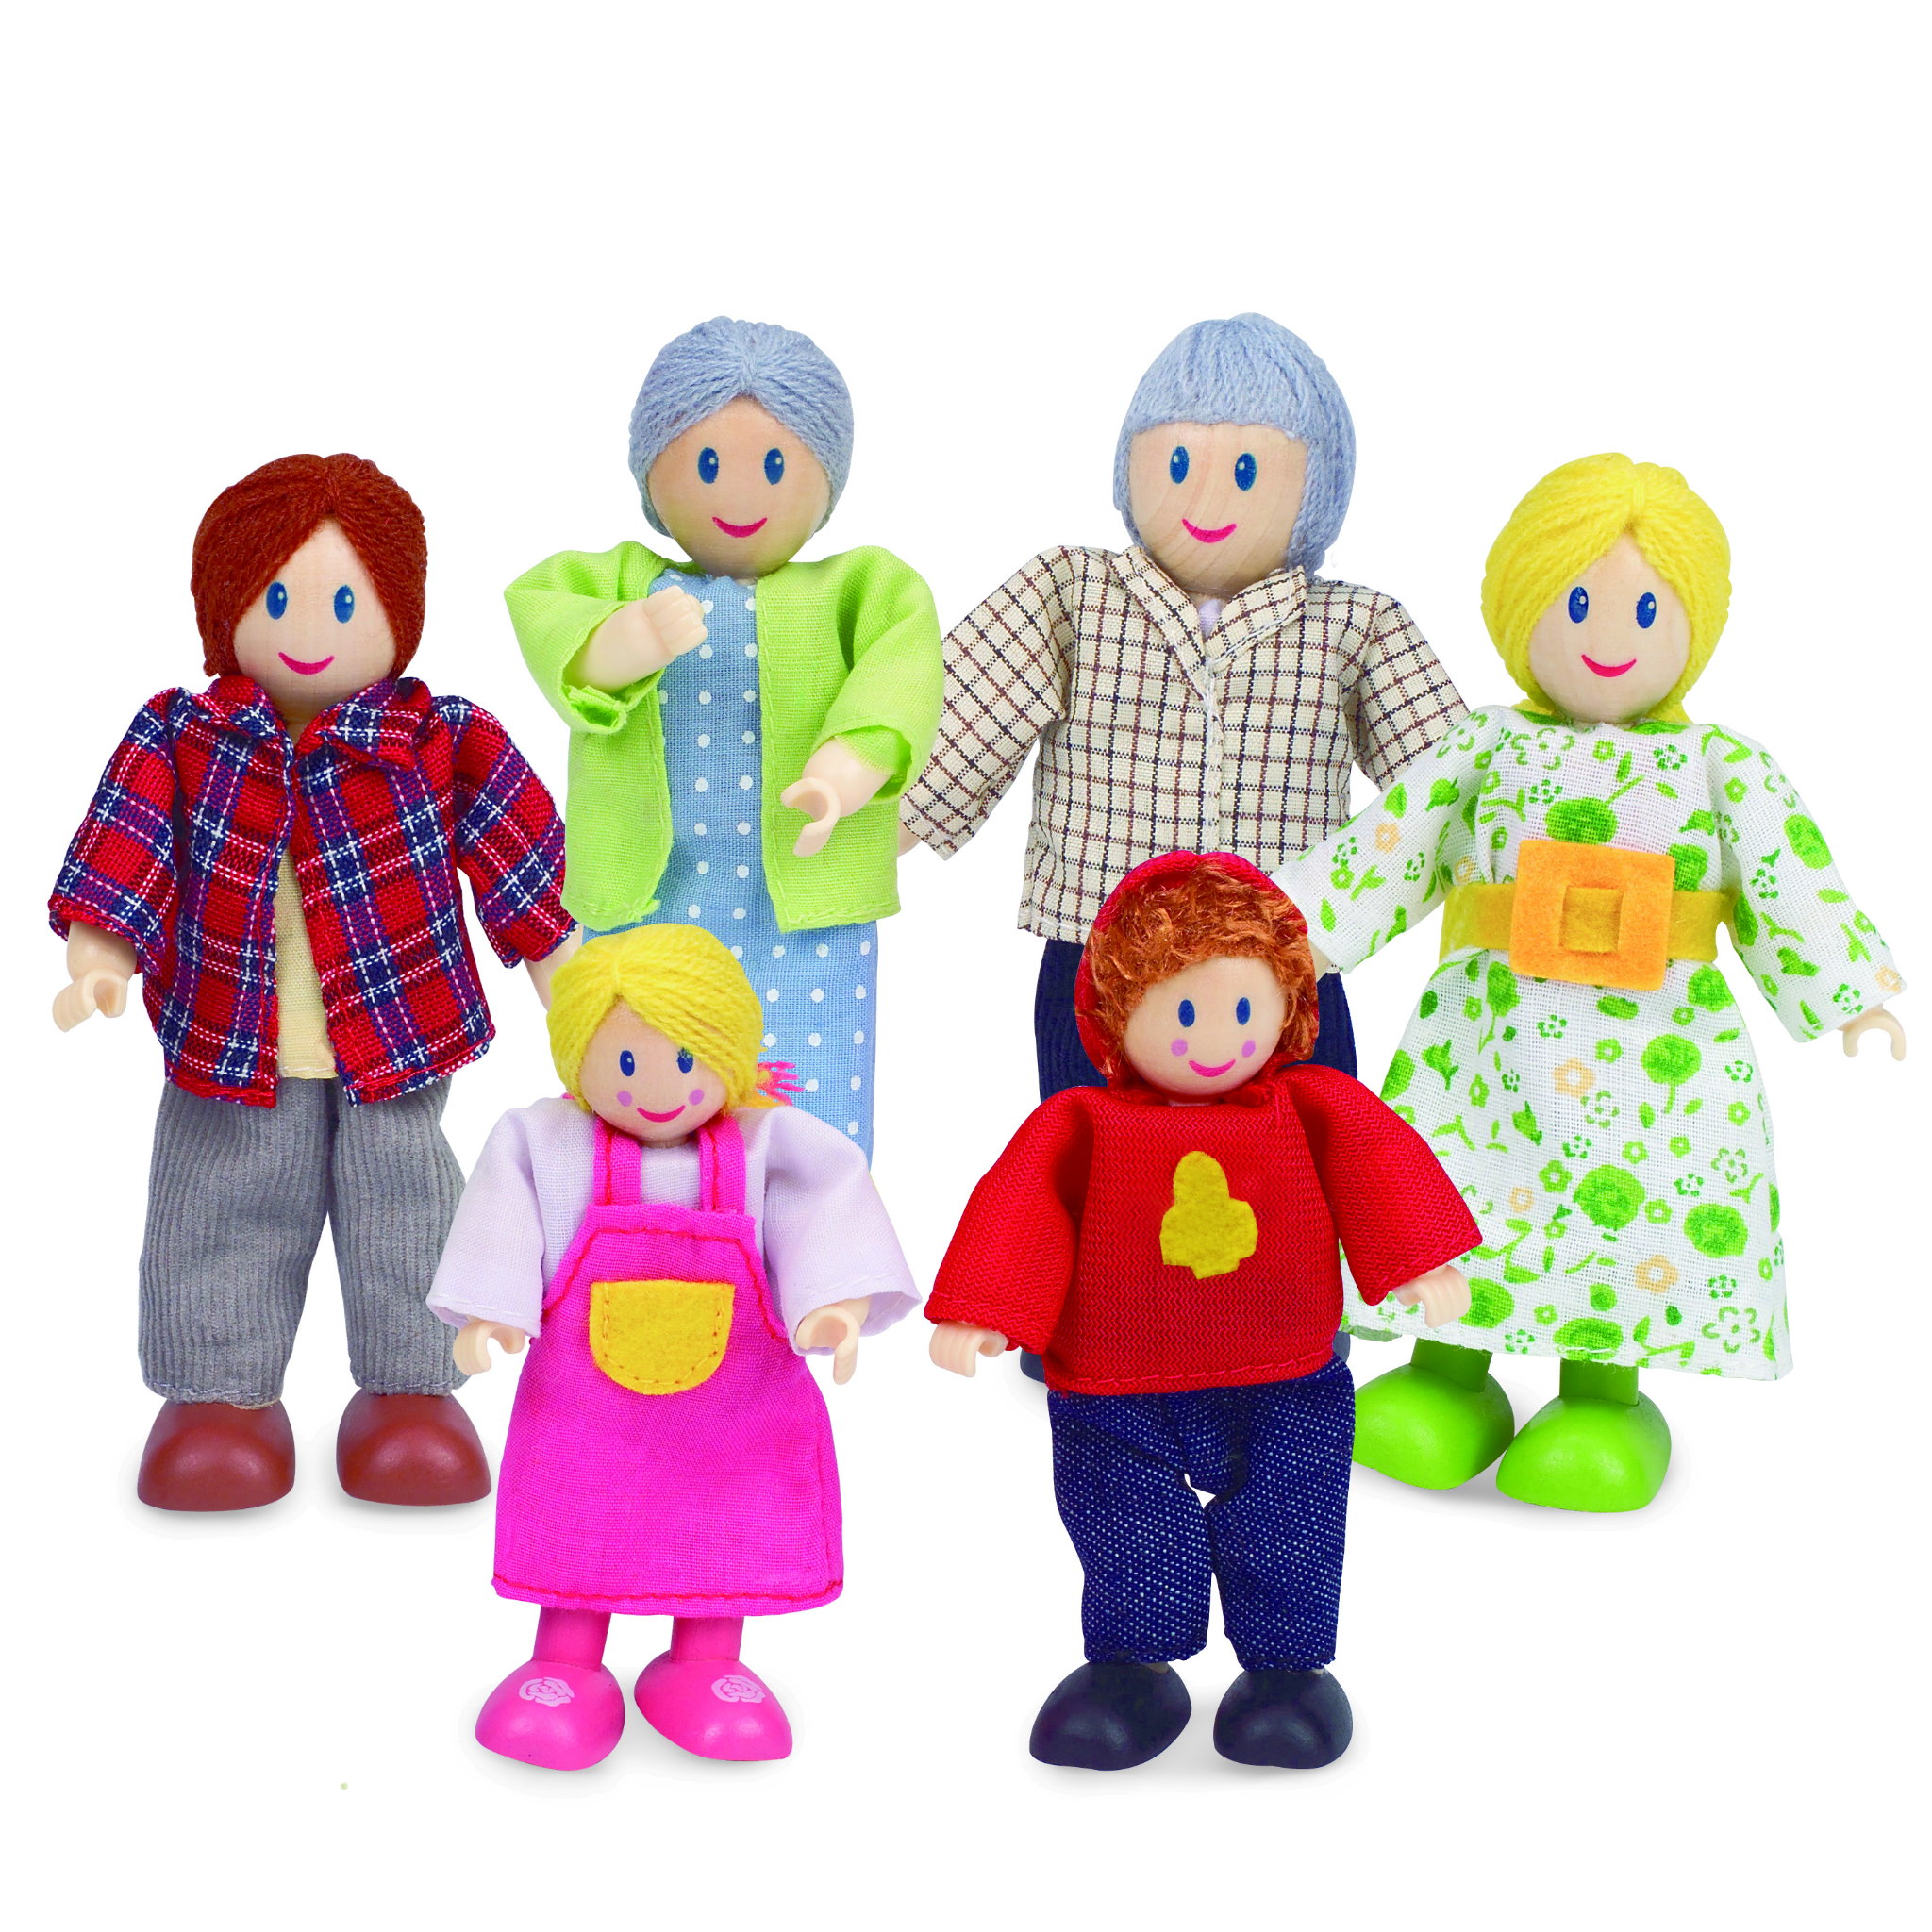 E3500 - 娃娃屋-幸福的家庭組合1